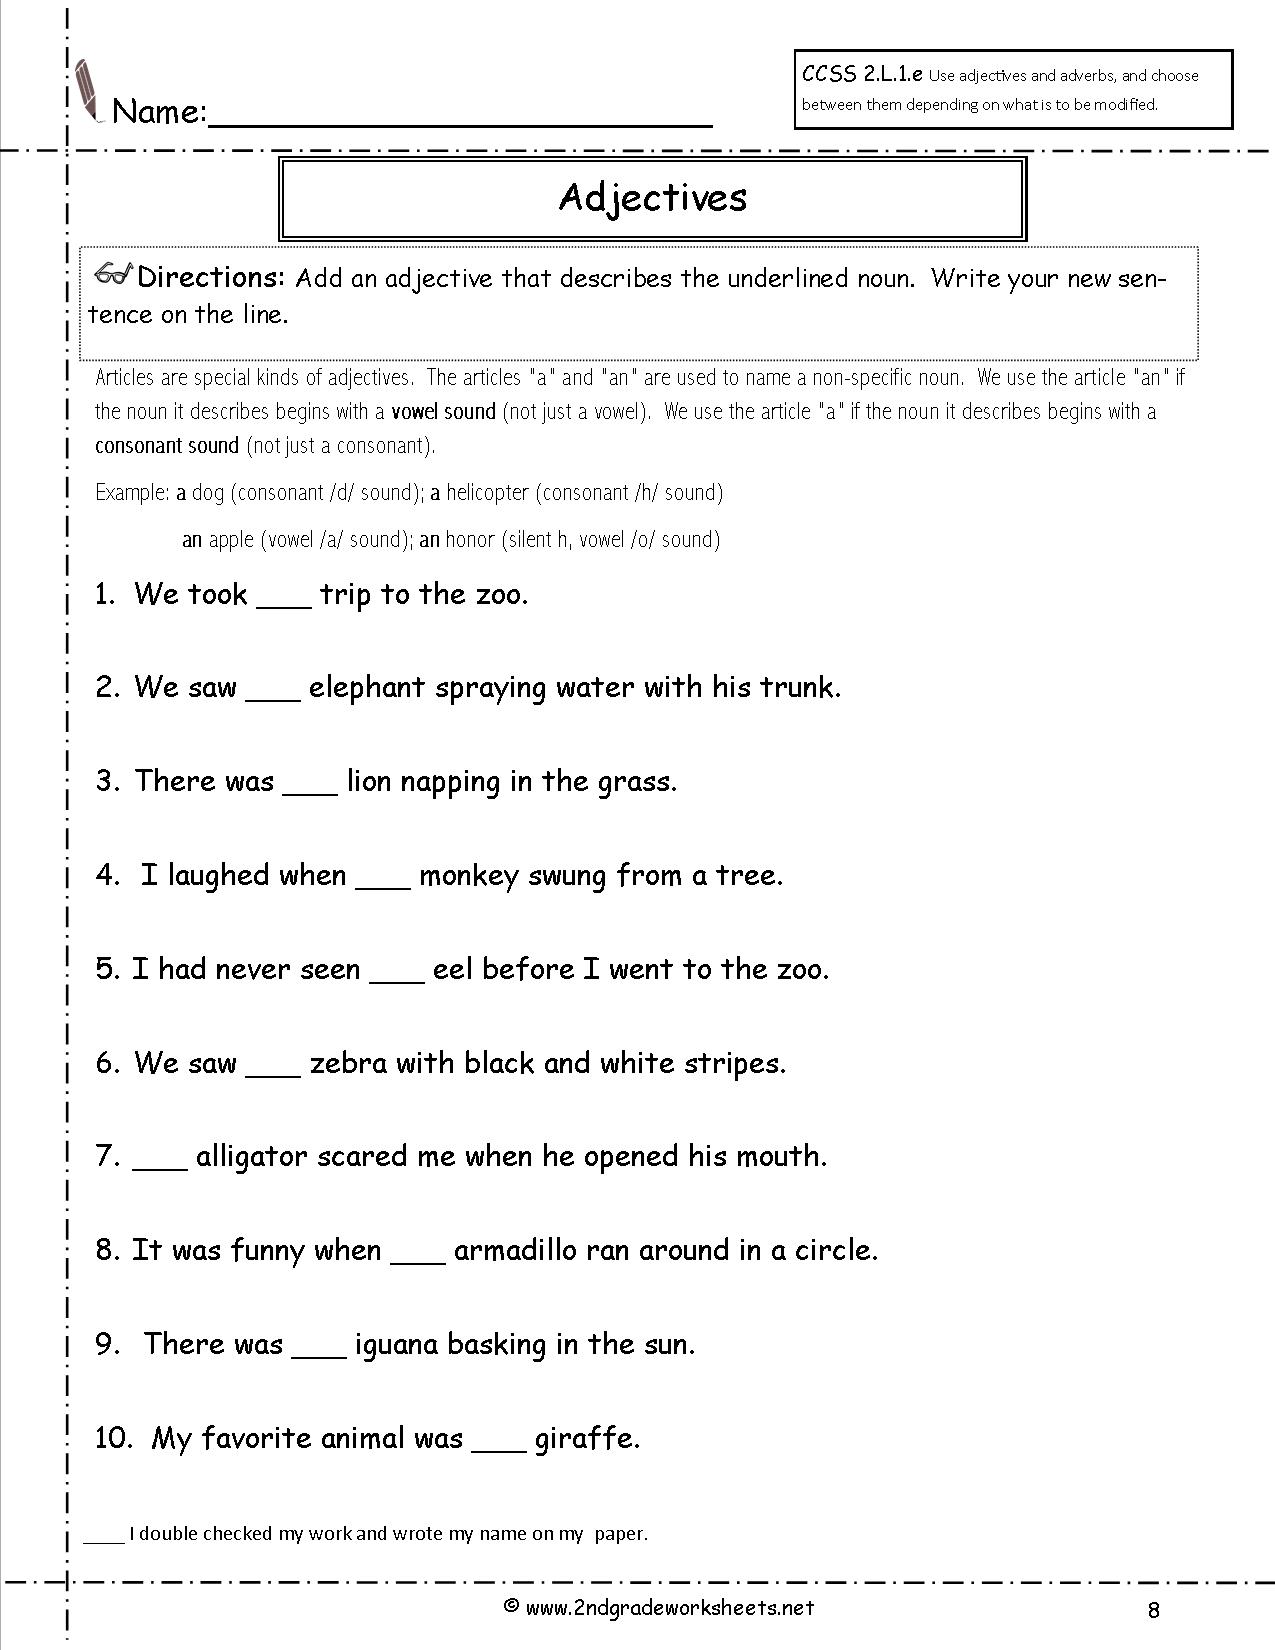 2nd Grade Grammar Worksheets Adjectives Image